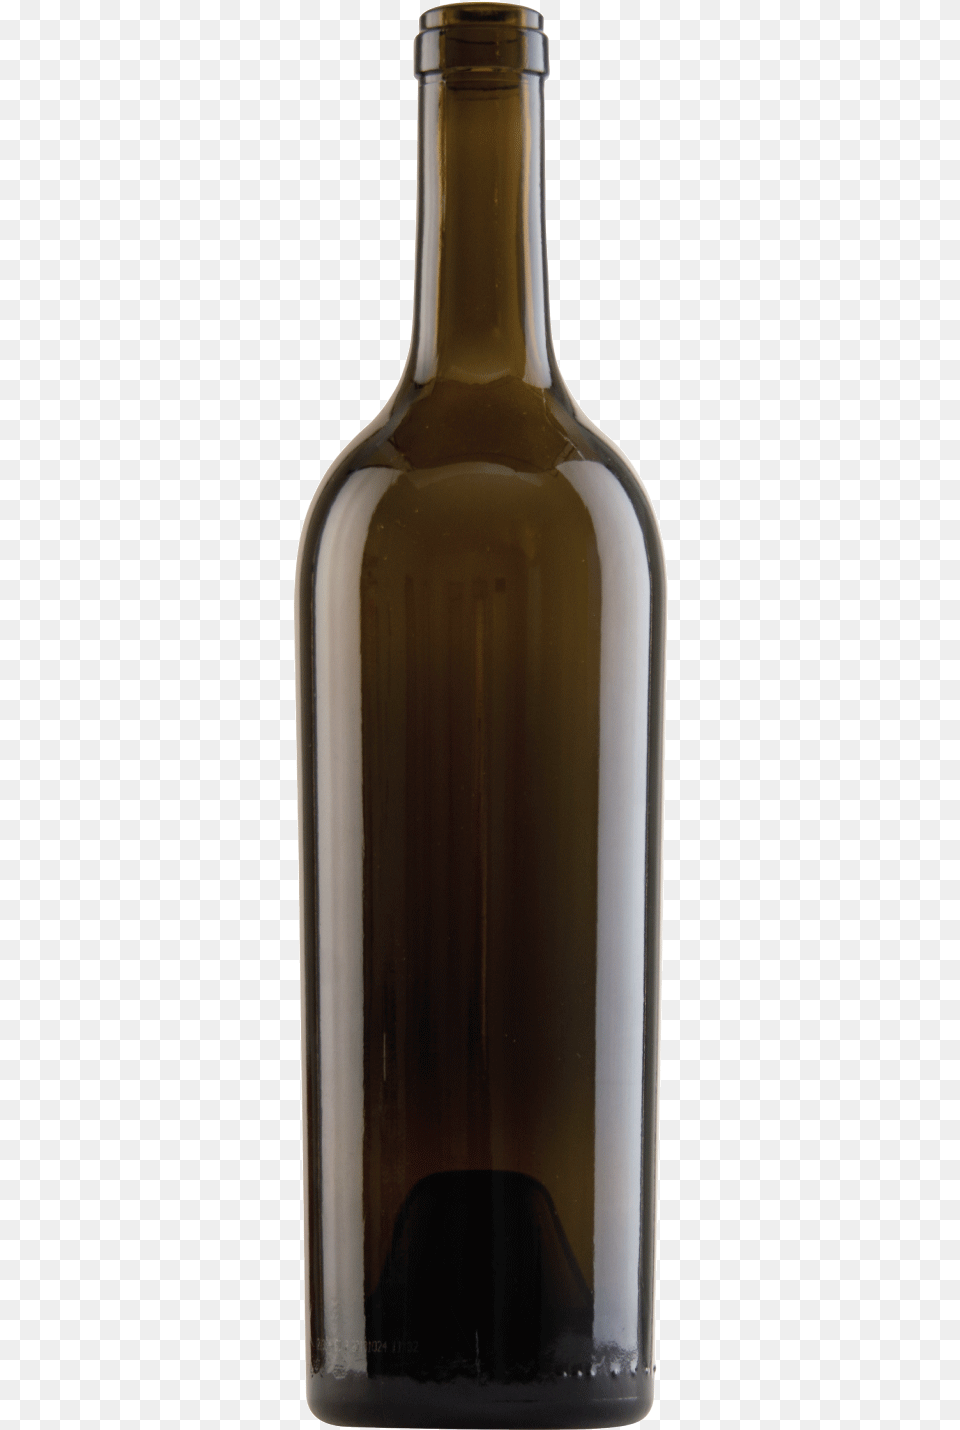 Alcohol Bottles, Beverage, Bottle, Liquor, Wine Png Image